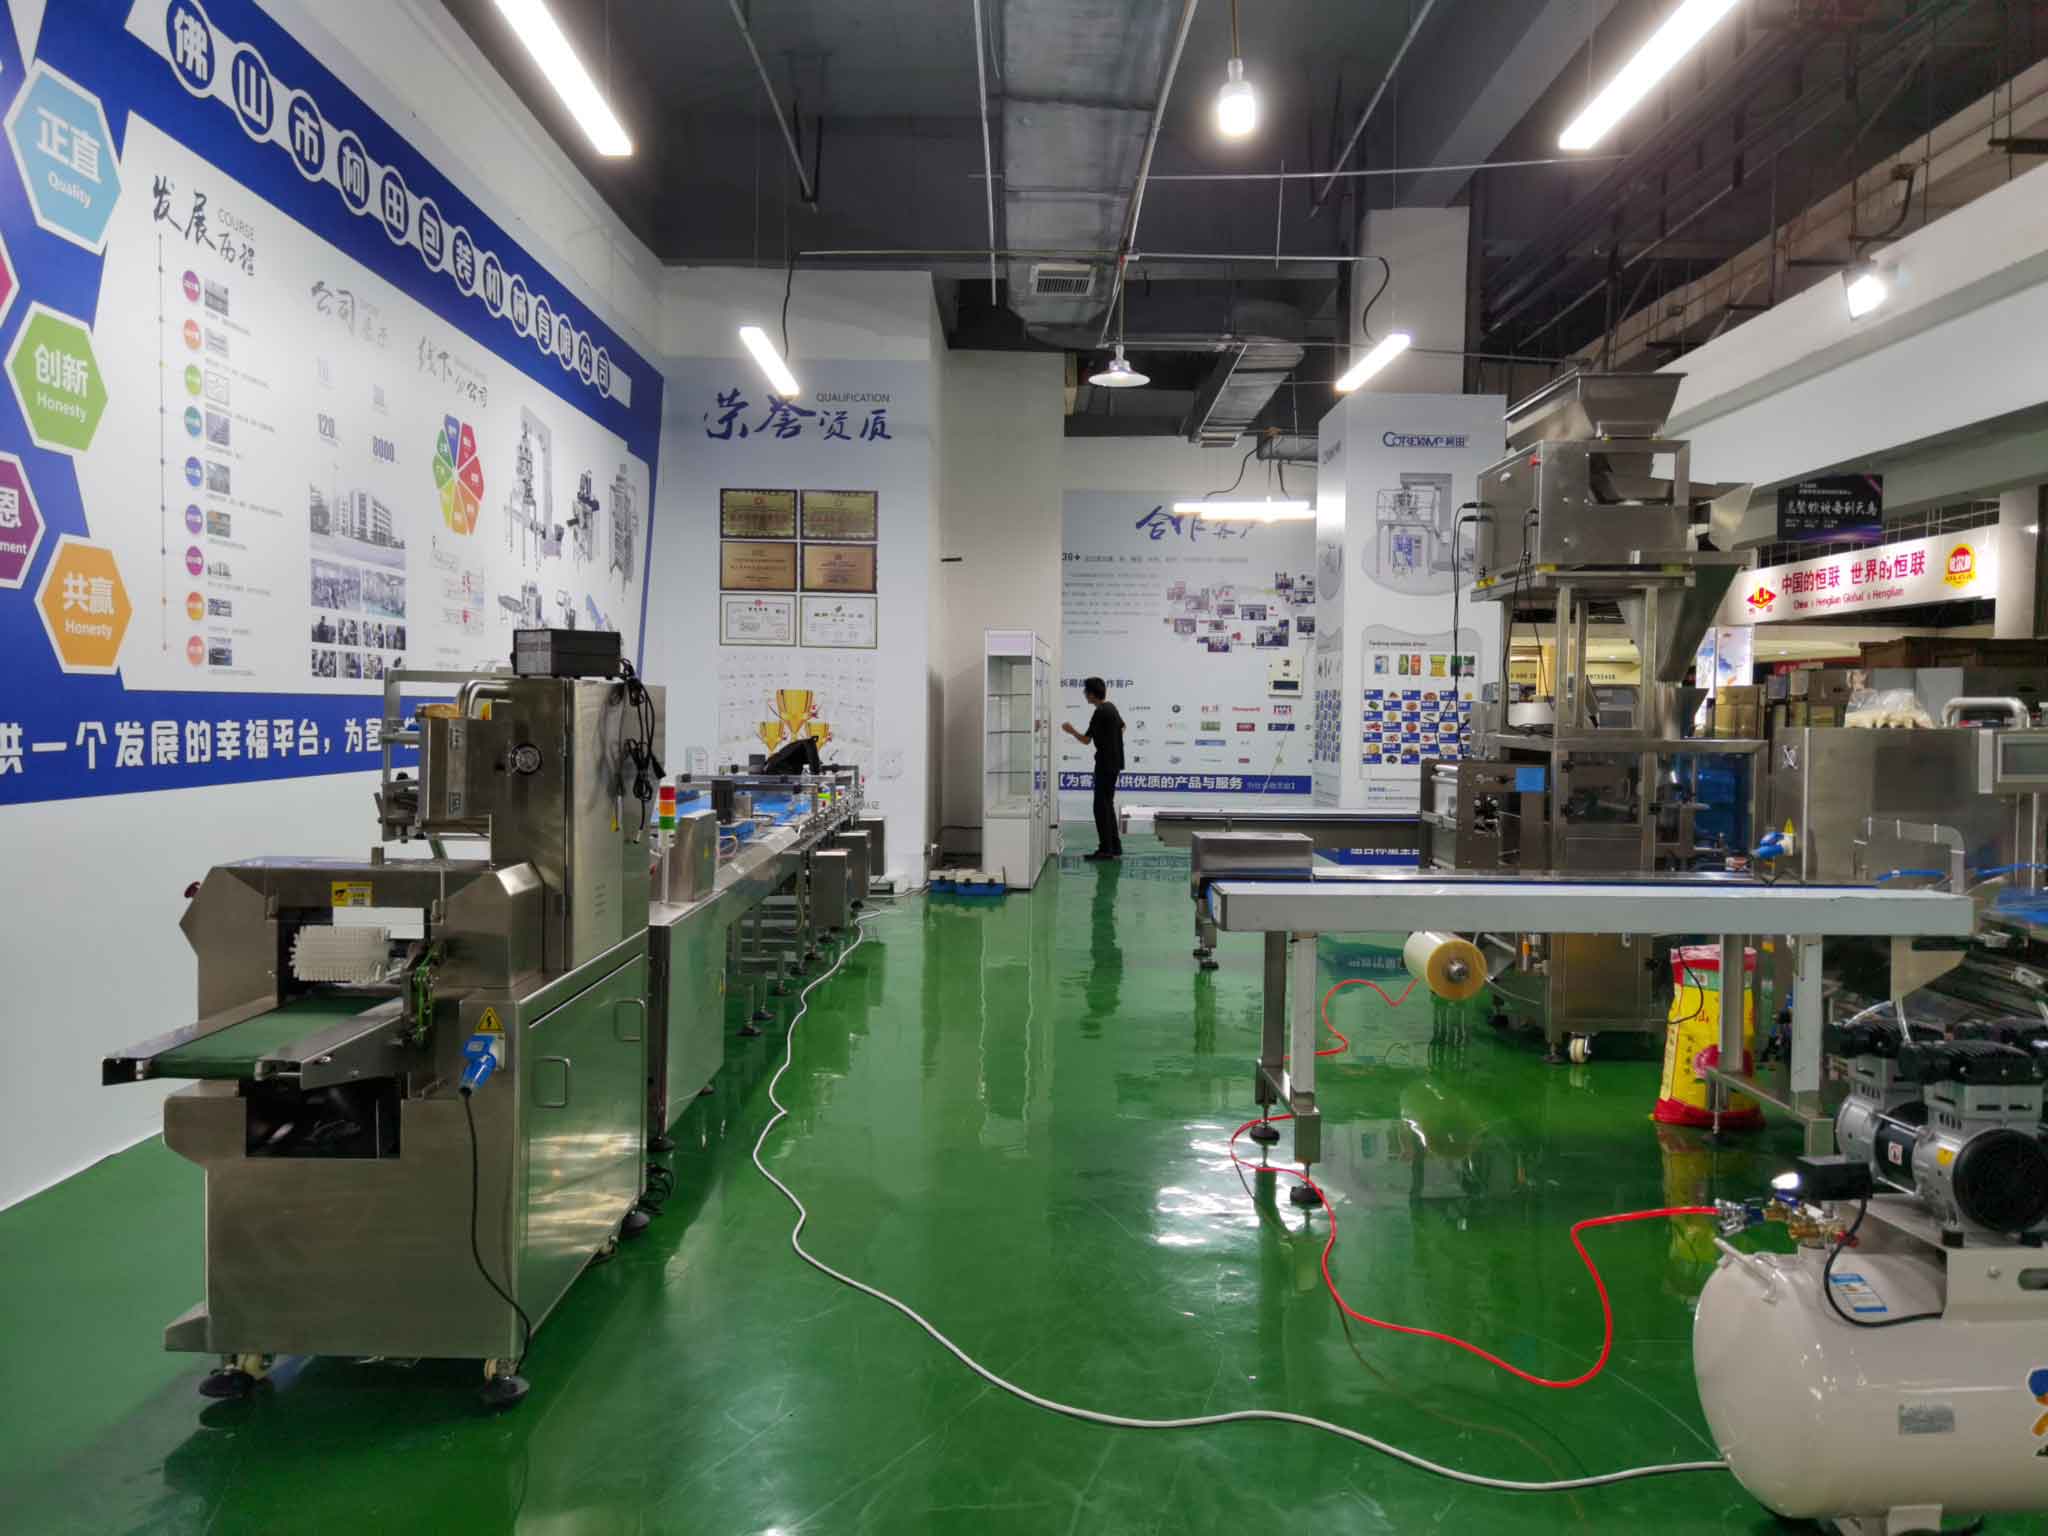 La sala de exposición de máquinas de embalaje de nuestra sucursal en Chengdu, China